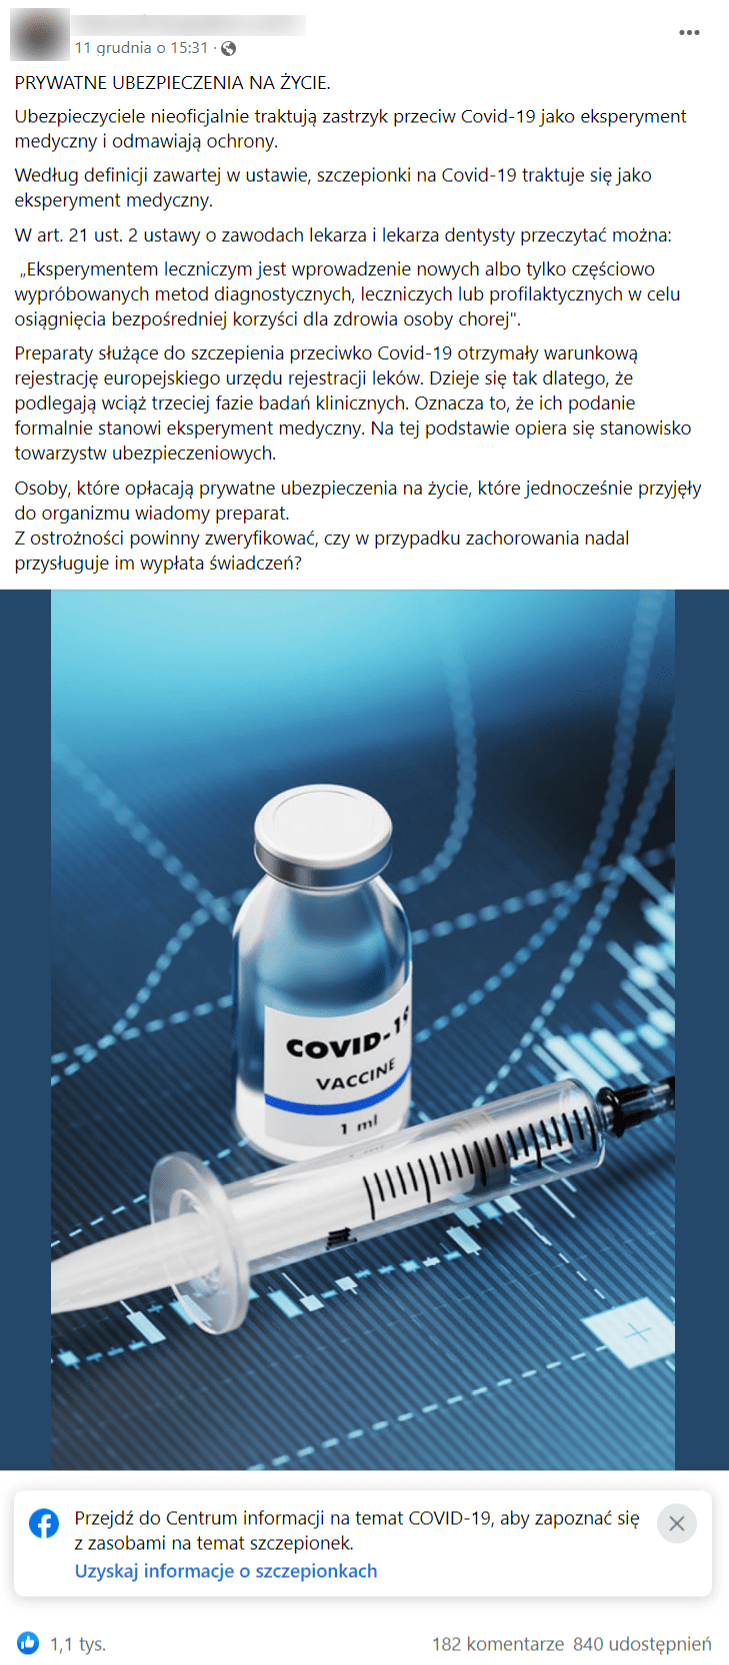 Zrzut ekranu wpisu na Facebooku, w którym przekonywano, że szczepionki przeciw COVID-19 stanowią eksperyment medyczny, a osoby zaszczepione najpewniej nie będą mogły korzystać ze swoich ubezpieczeń. Wpis został polubiony ponad 1 tys. razy i udostępniony ponad 800 razy.